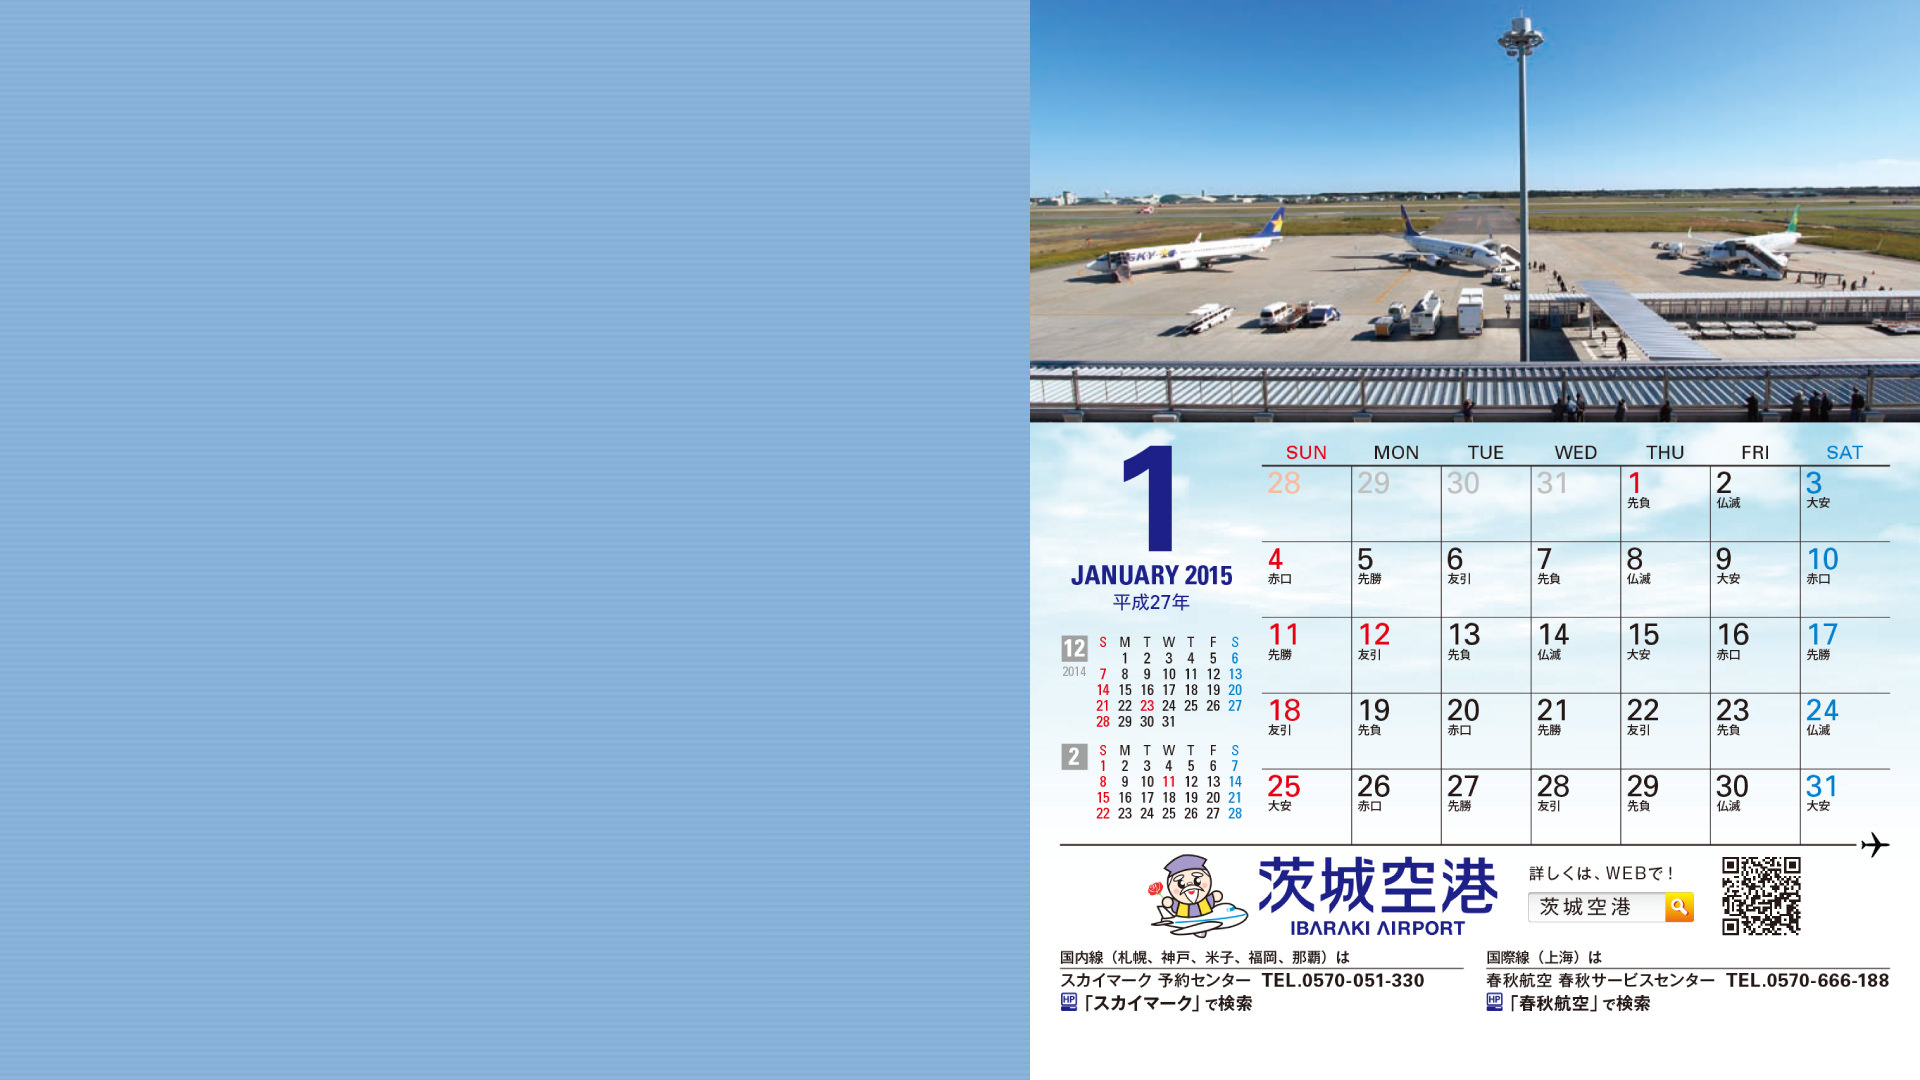 デスクトップカレンダー壁紙 Ibaraki Airport